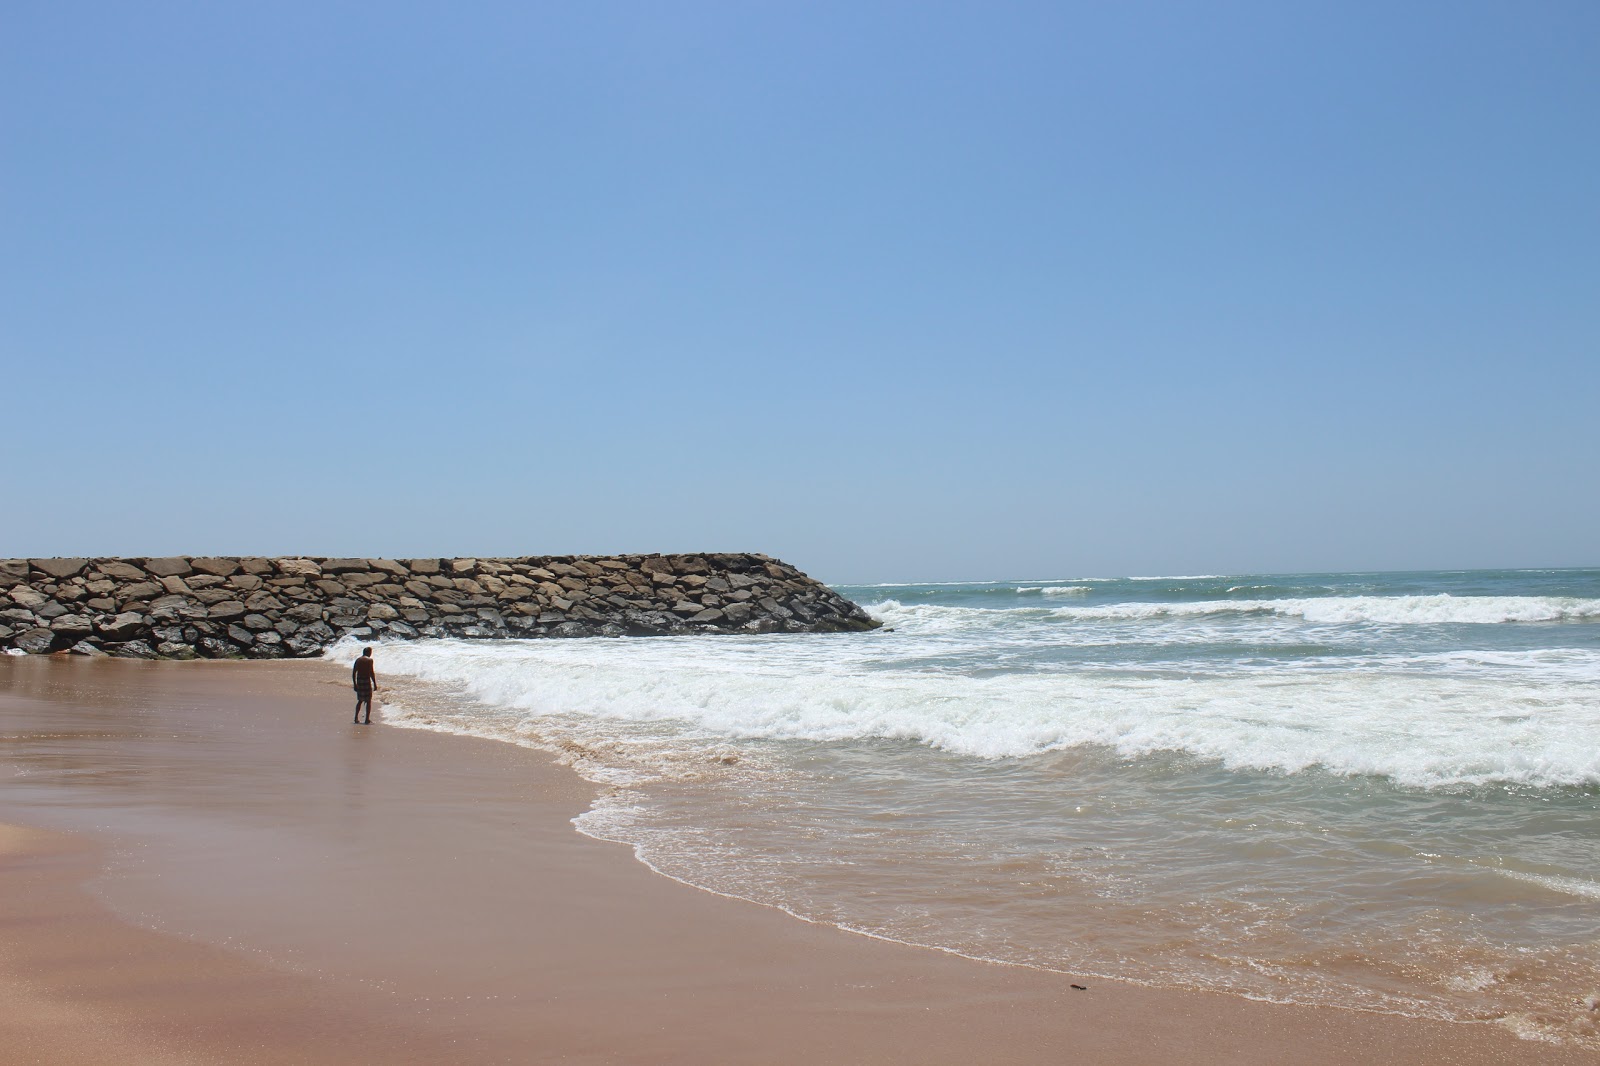 Nadar Uvari Beach'in fotoğrafı parlak kum yüzey ile